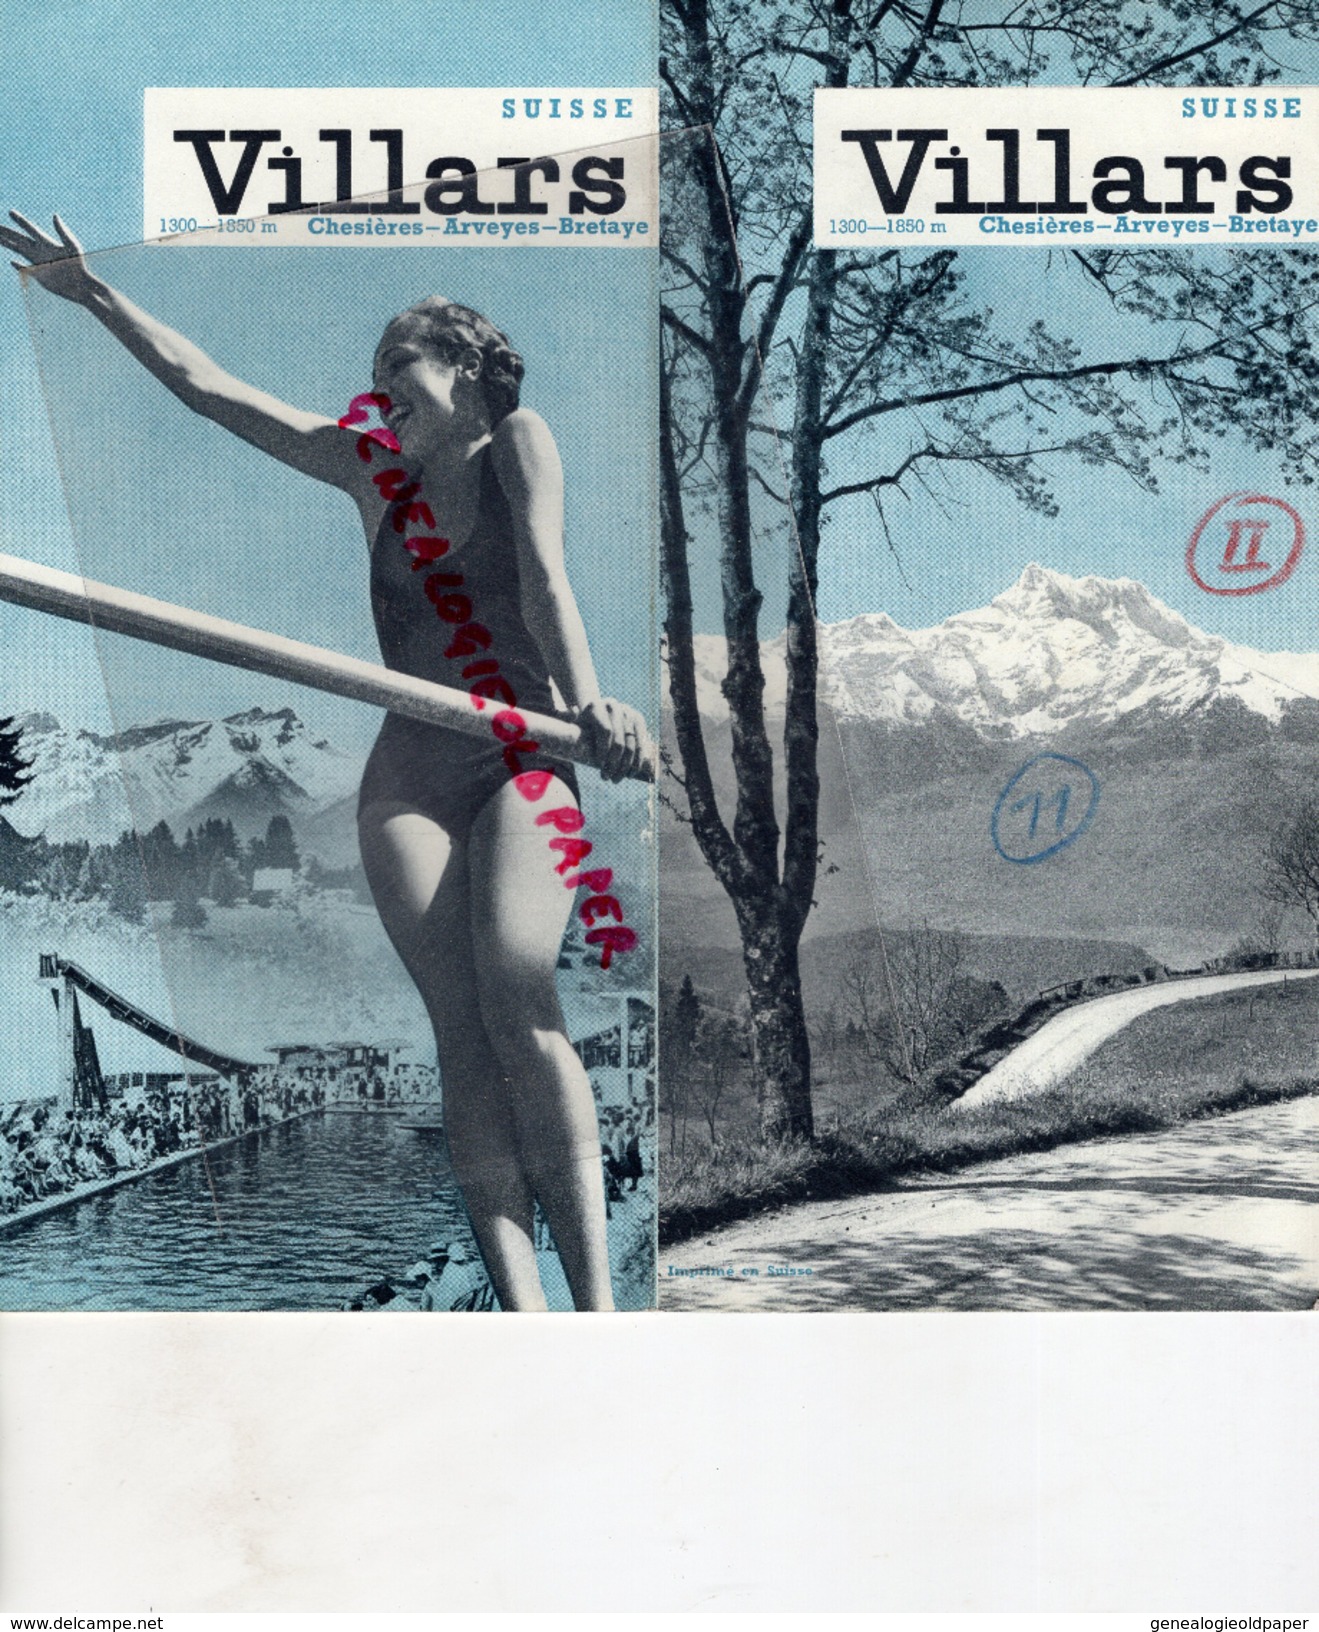 SUISSE - VILLARS -CHESIERES-ARVEYES-BRETAYE- DEPLIANT TOURISTIQUE AVEC LISTE HOTELS-  1937 - Dépliants Touristiques